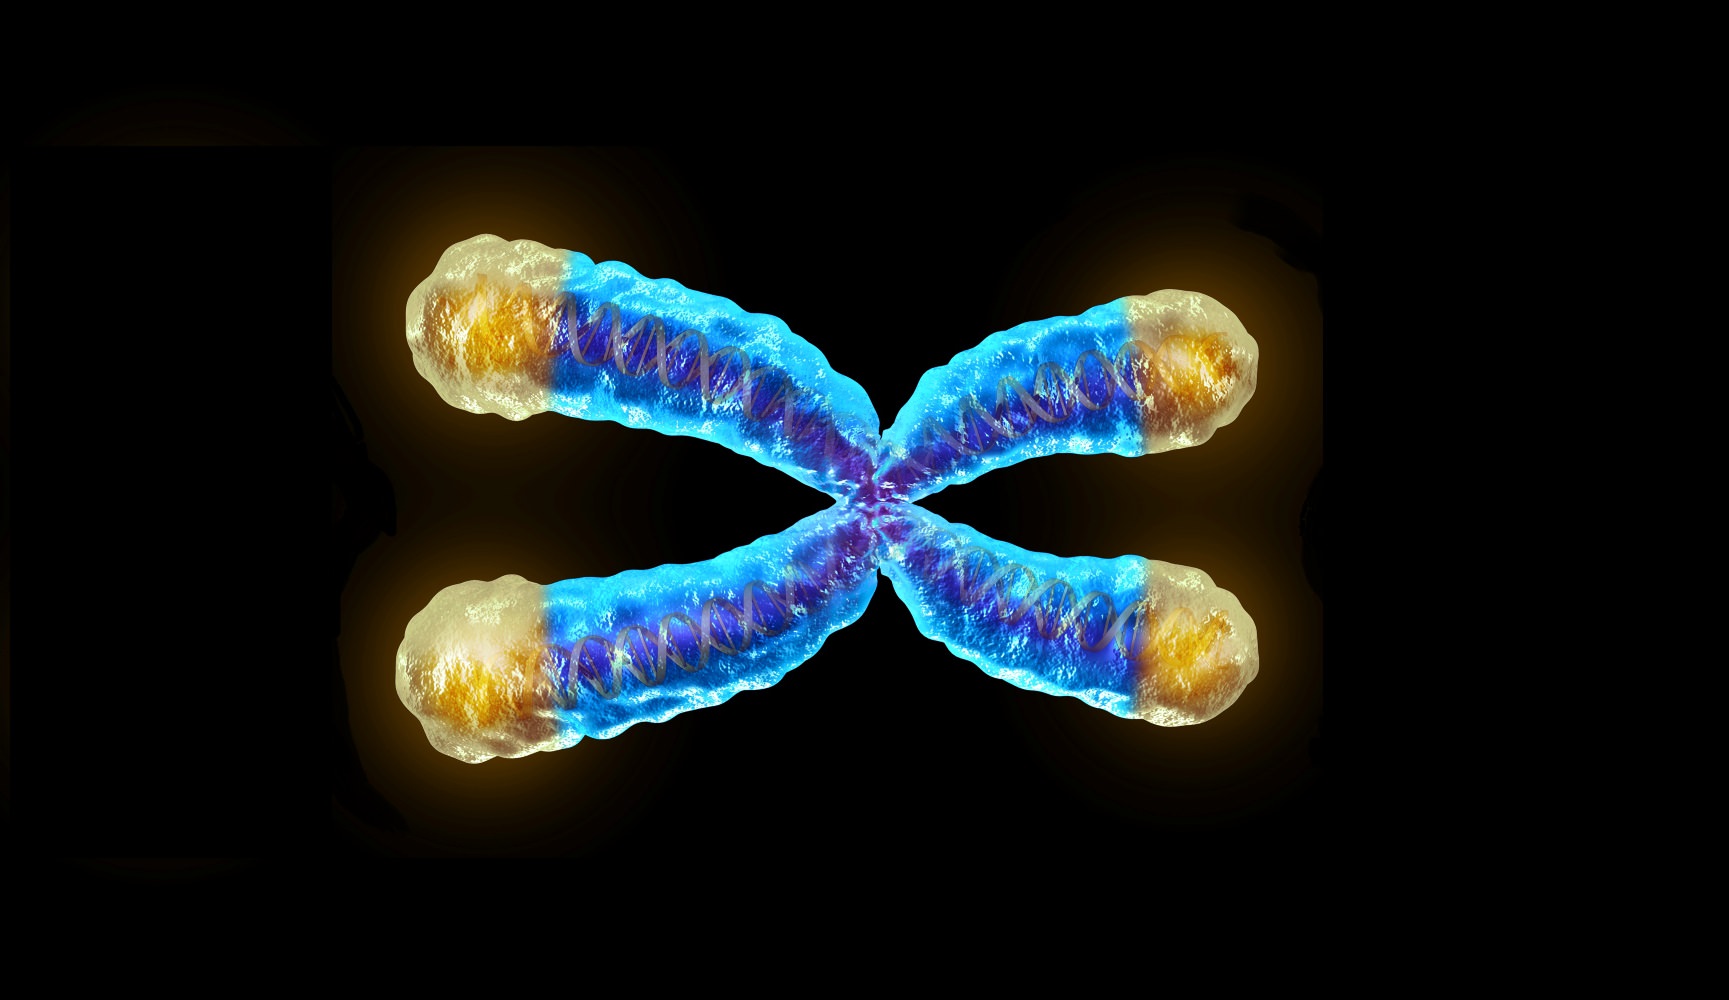 50 chromosome. Теломер хромосомы. ДНК хромосомы теломера. Хромосома с теломерами. Хромосома 3д модель.